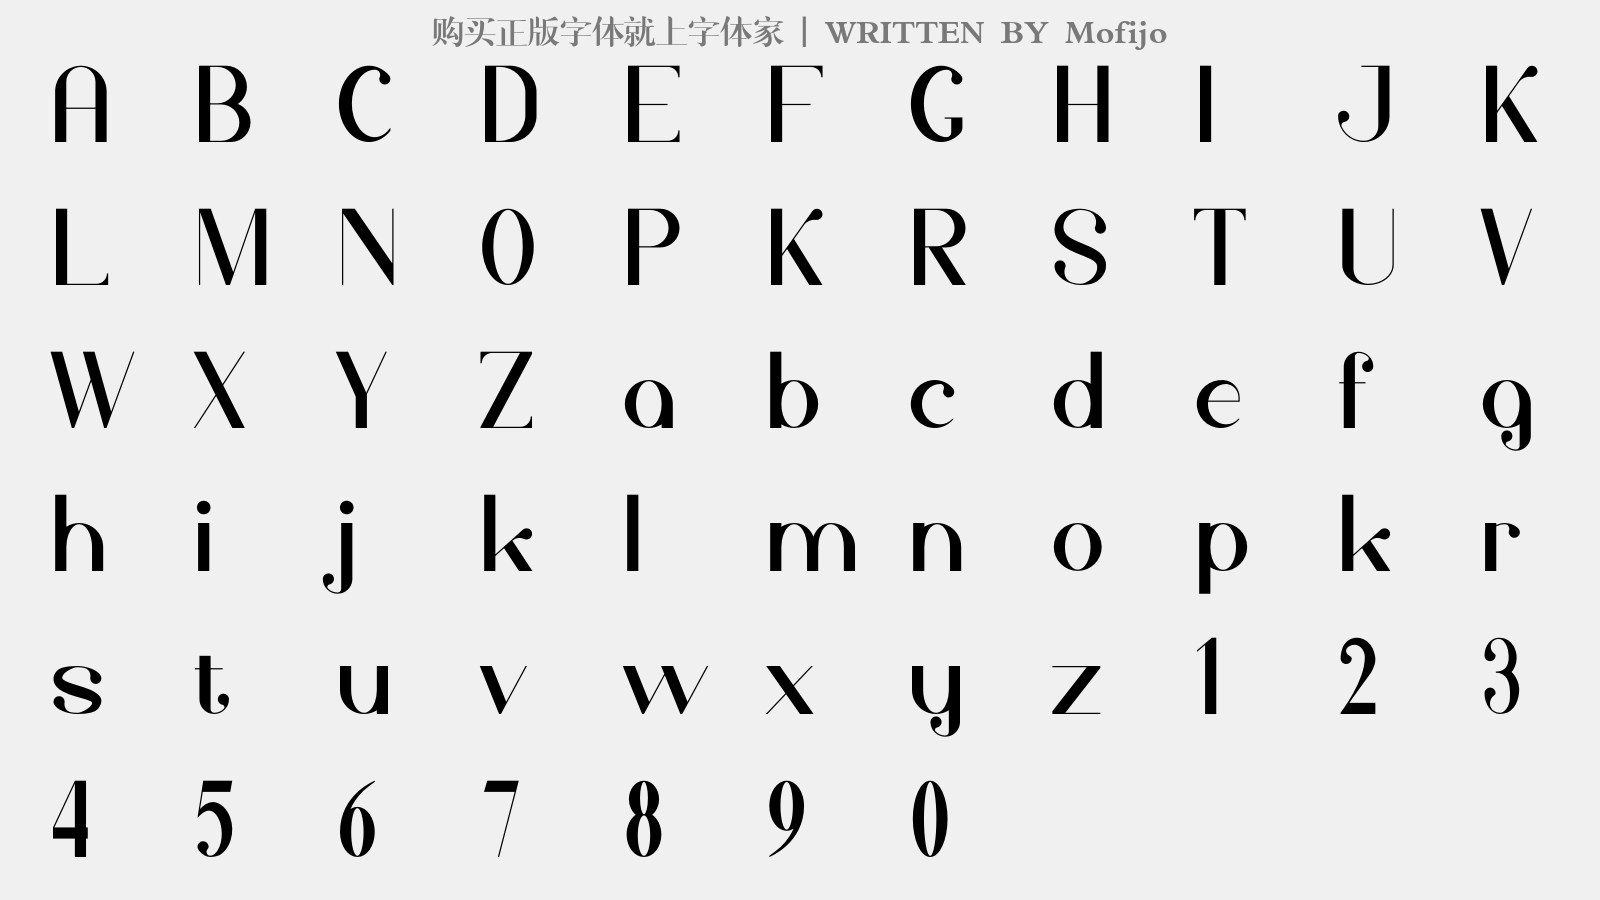 Mofijo - 大写字母/小写字母/数字